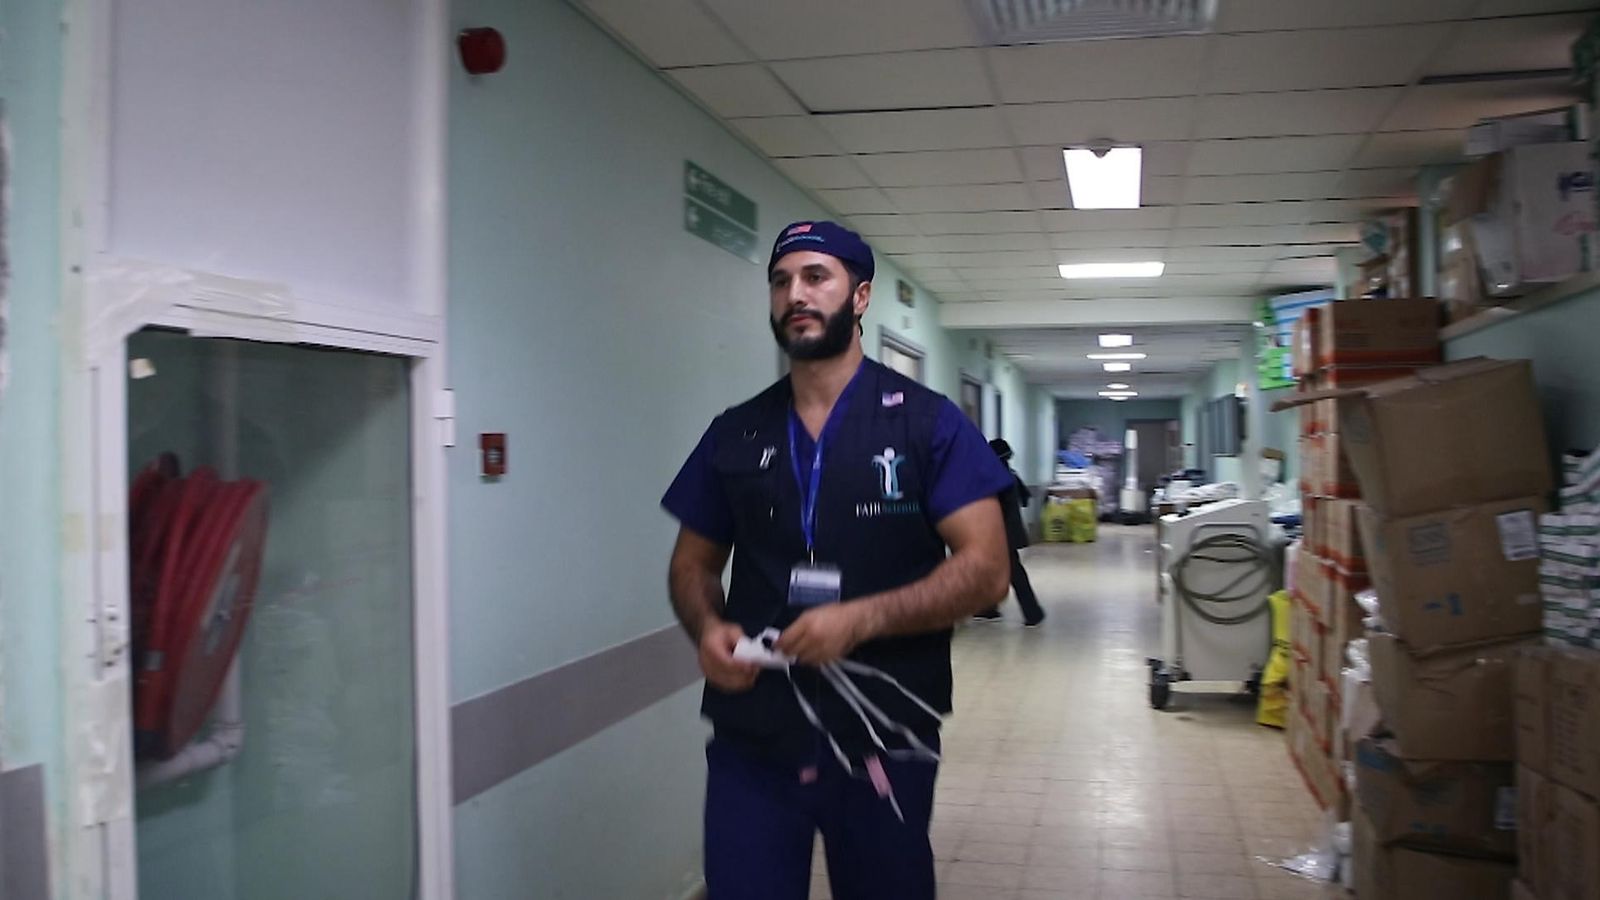 طبيب سابق في هيئة الخدمات الصحية الوطنية تقطعت به السبل في غزة أثناء إقامته في المستشفى، وعائلته “مرعوبة” لكن “يجب عليه الاستمرار” |  اخبار العالم